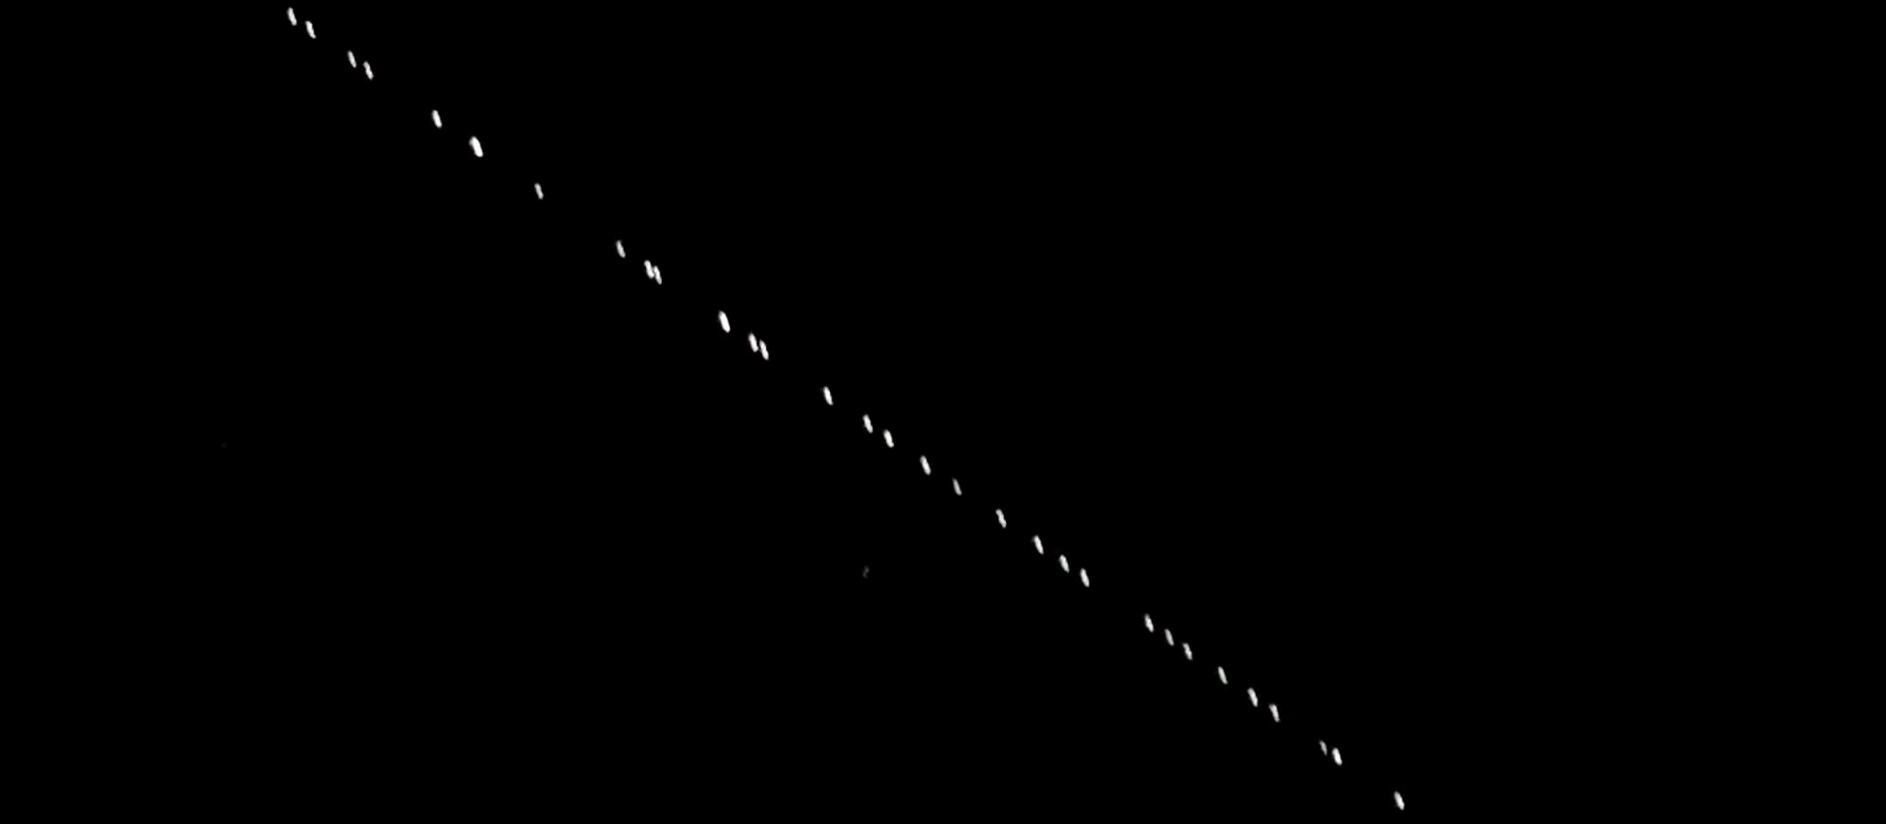 W maju na nocnym niebie można było dostrzec 60 satelitów Starlink wystrzelonych przez SpaceX (fot. michał m / youtube)
